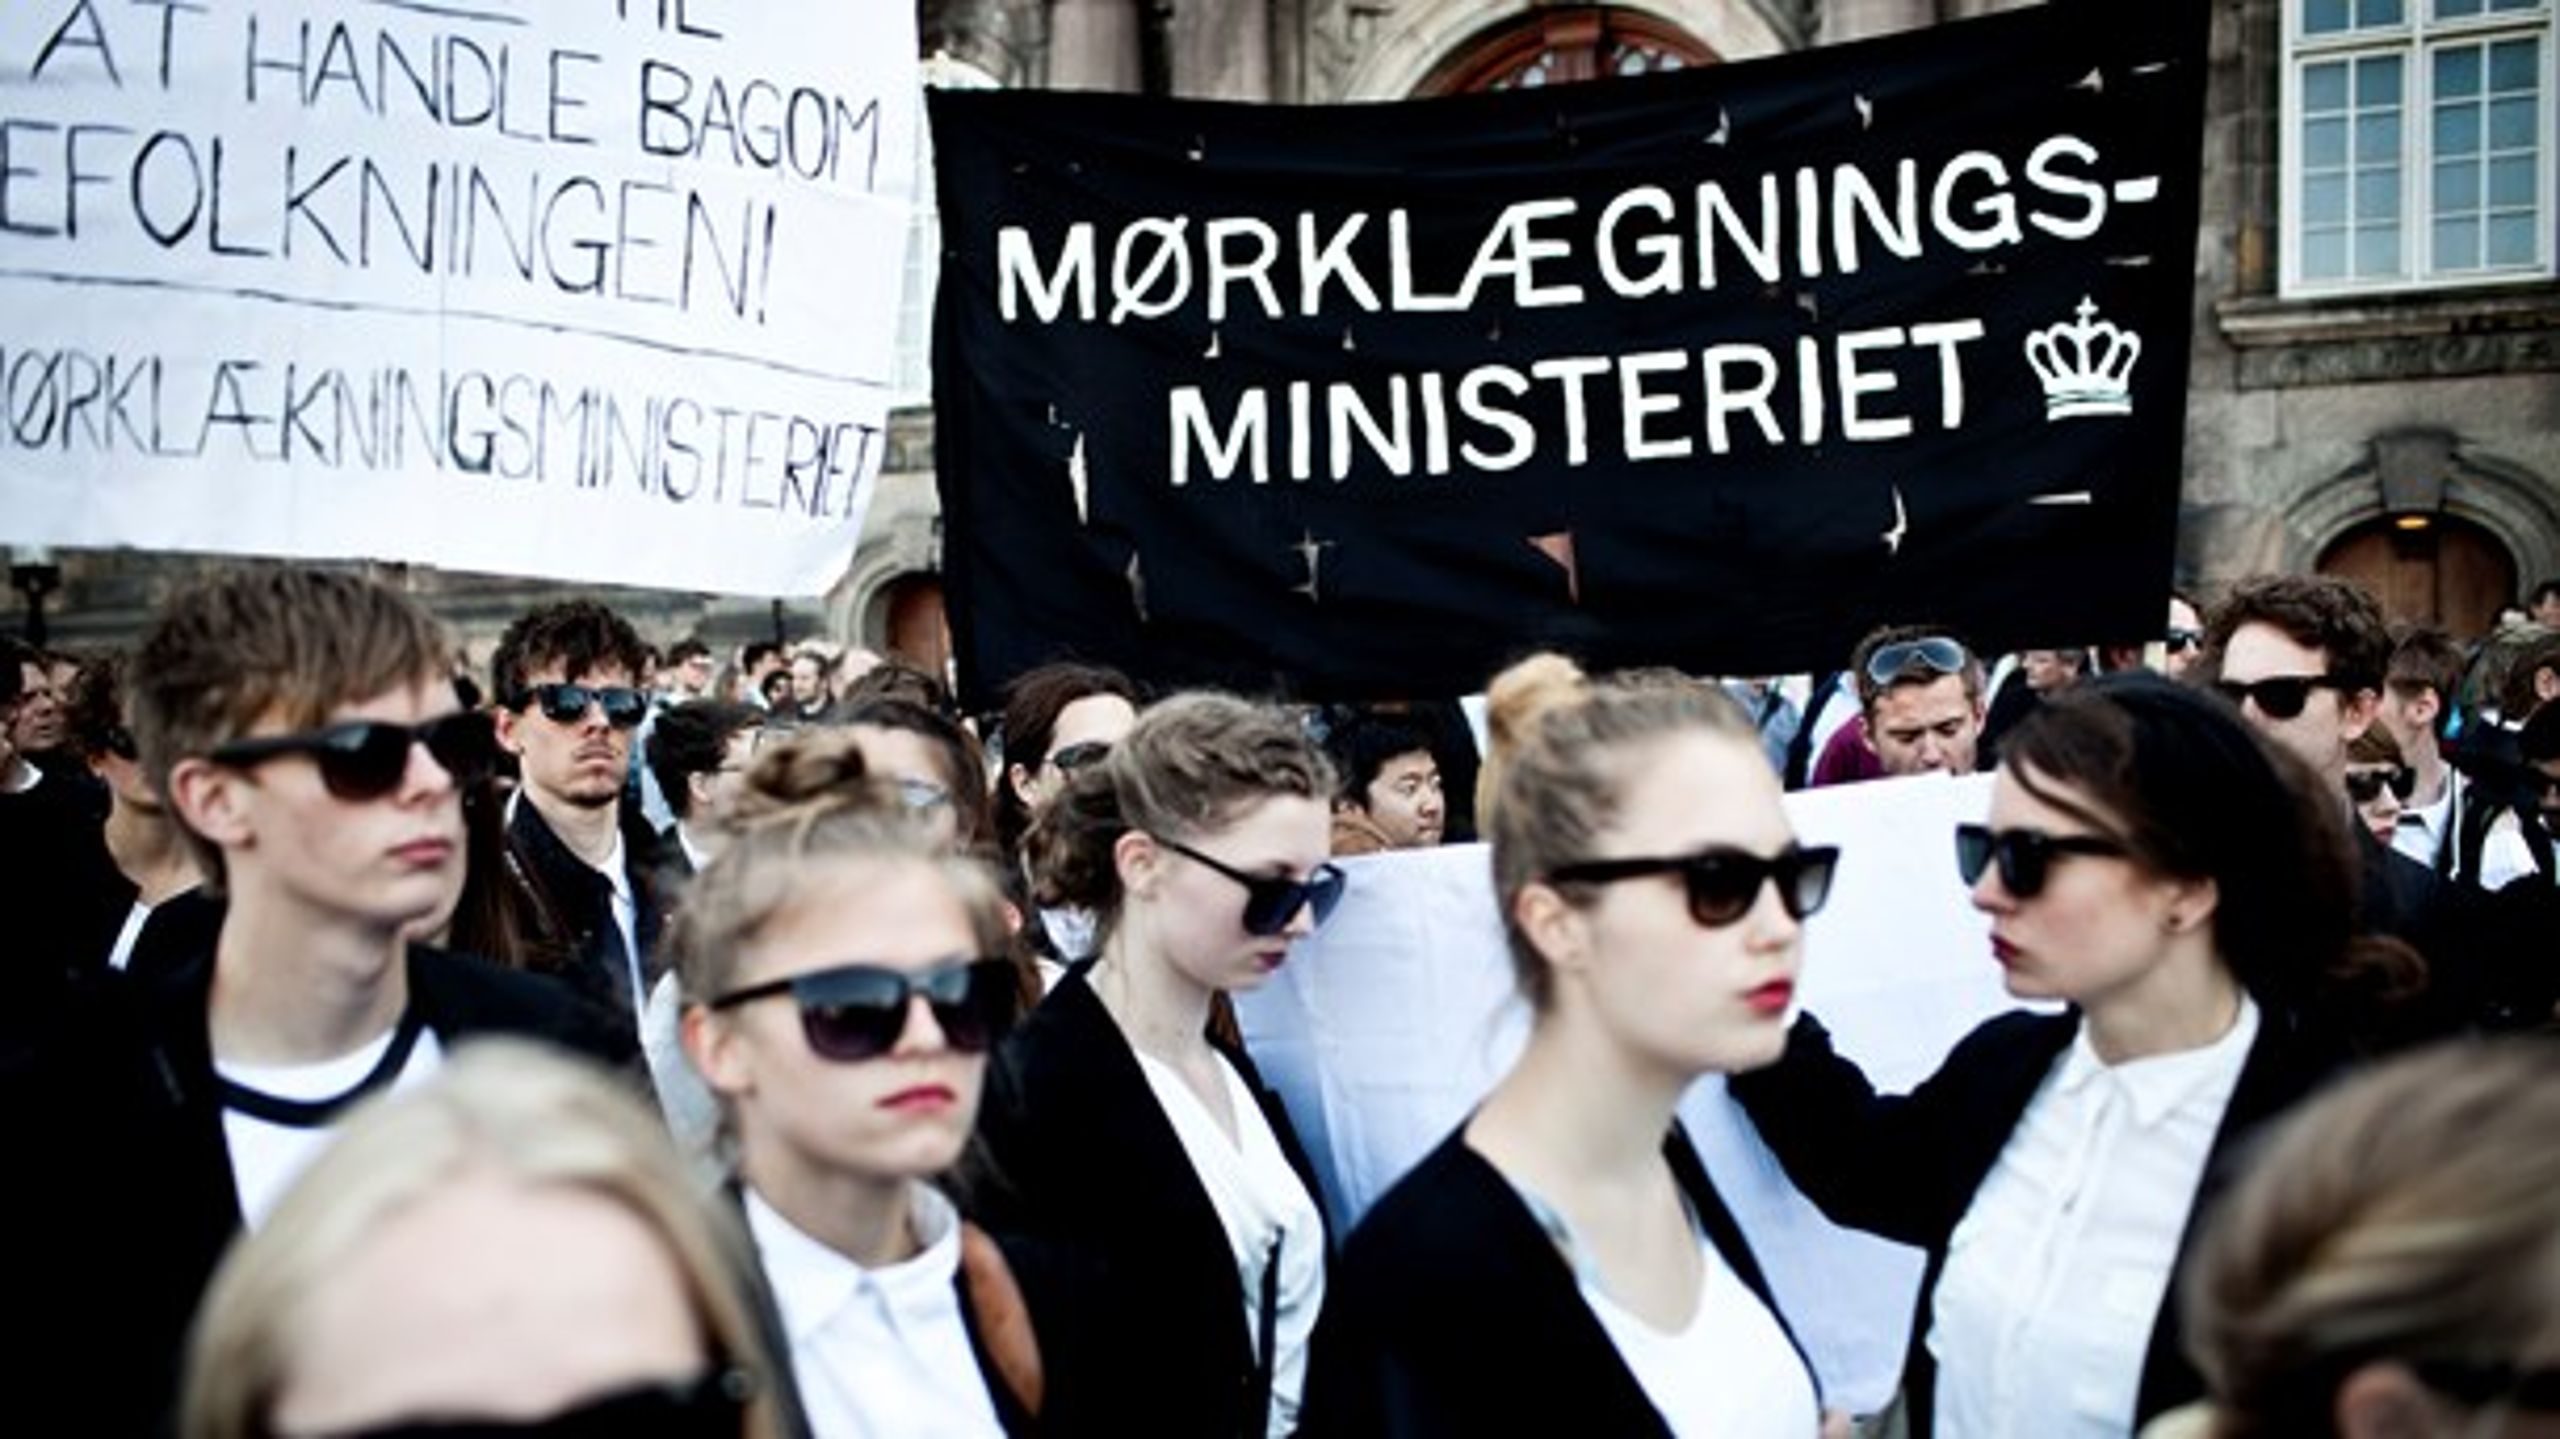 I maj 2013 samledes en gruppe demonstranter foran Christiansborg for at demonstrere mod den nye offentlighedslov. Demonstranterne var iført solbriller i protest mod den mørklægning, de mente at loven medførte.